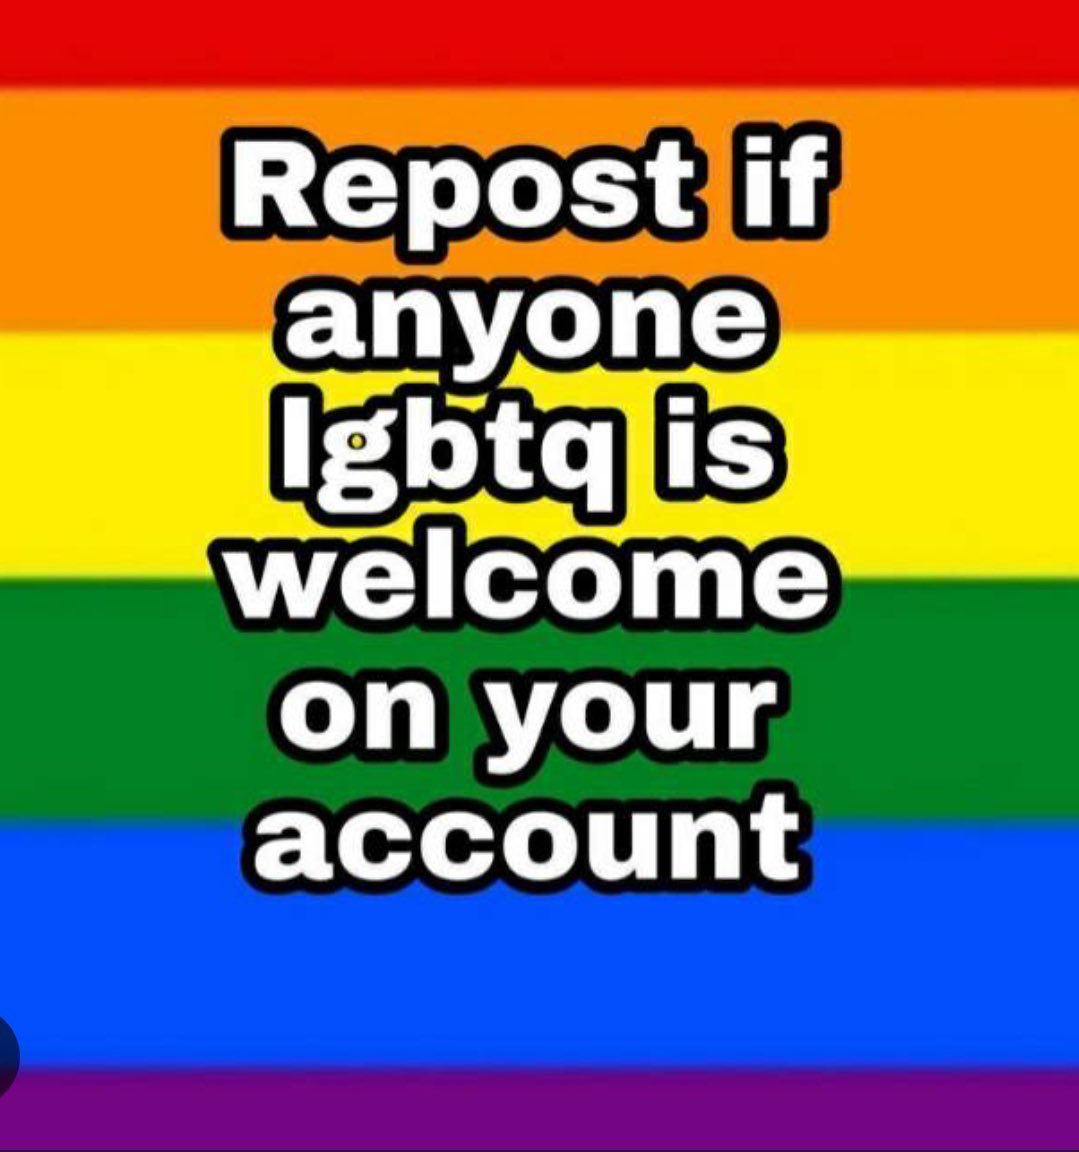 I welcome anyone #LGBTQ+